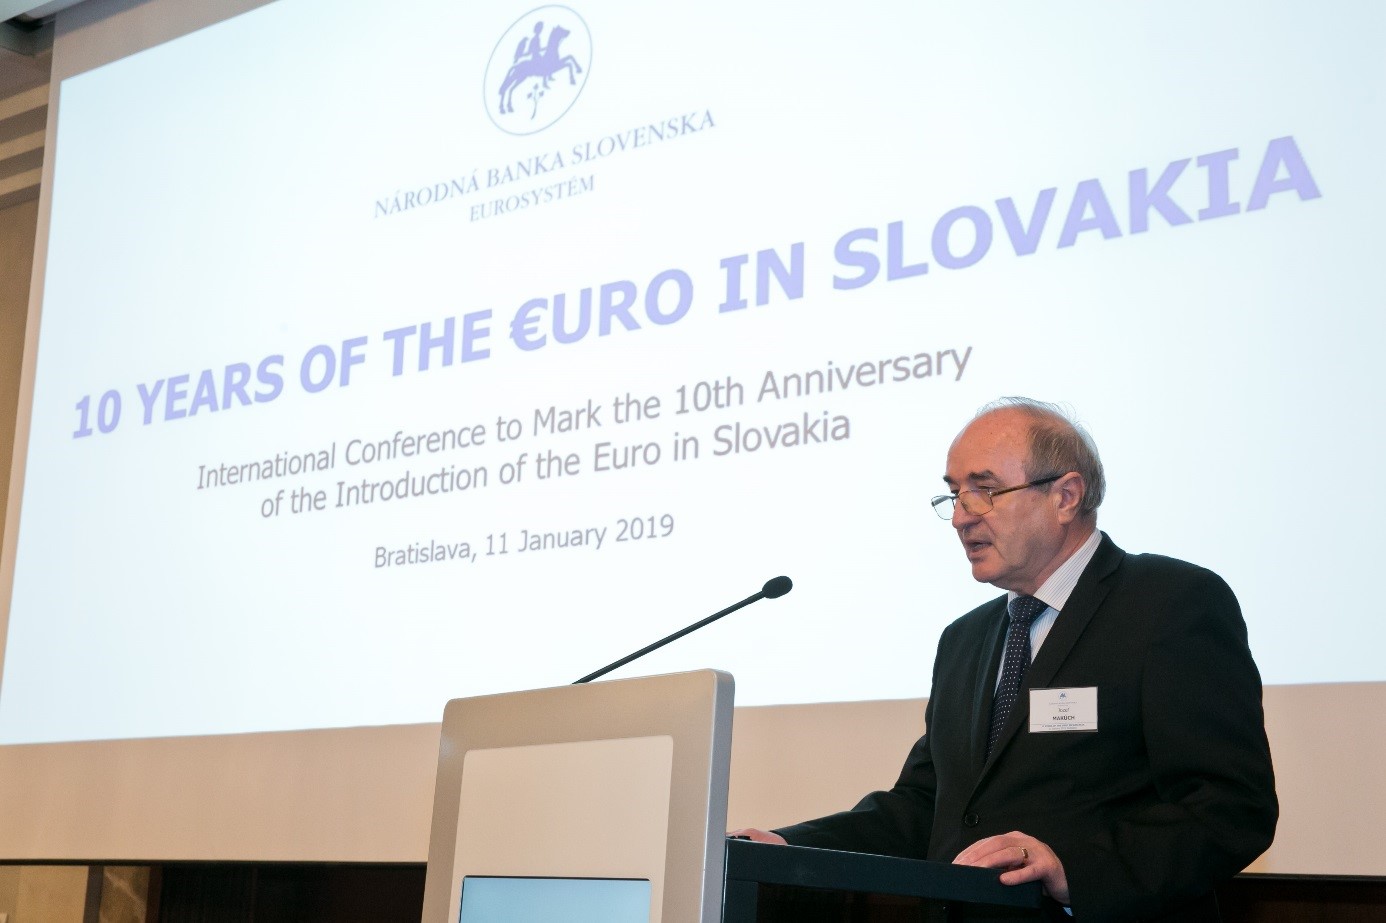 Medzinárodná konferencia k 10. výročiu zavedenia eura v SR